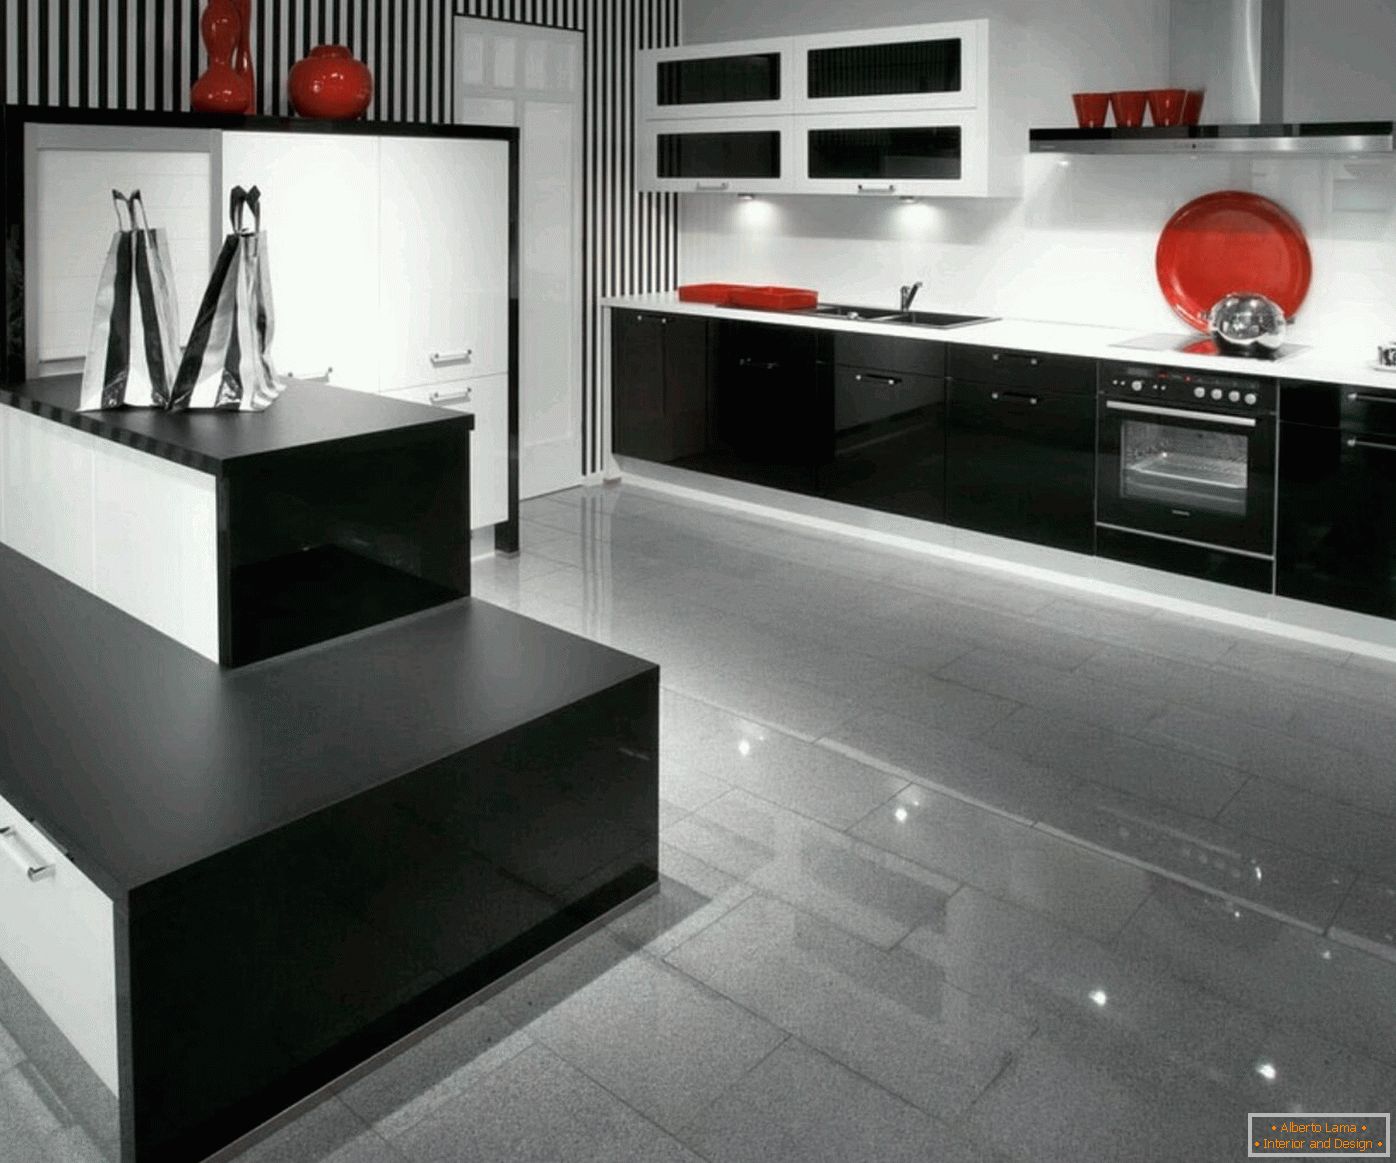 Imagini de fundal în bucătărie în stil high-tech